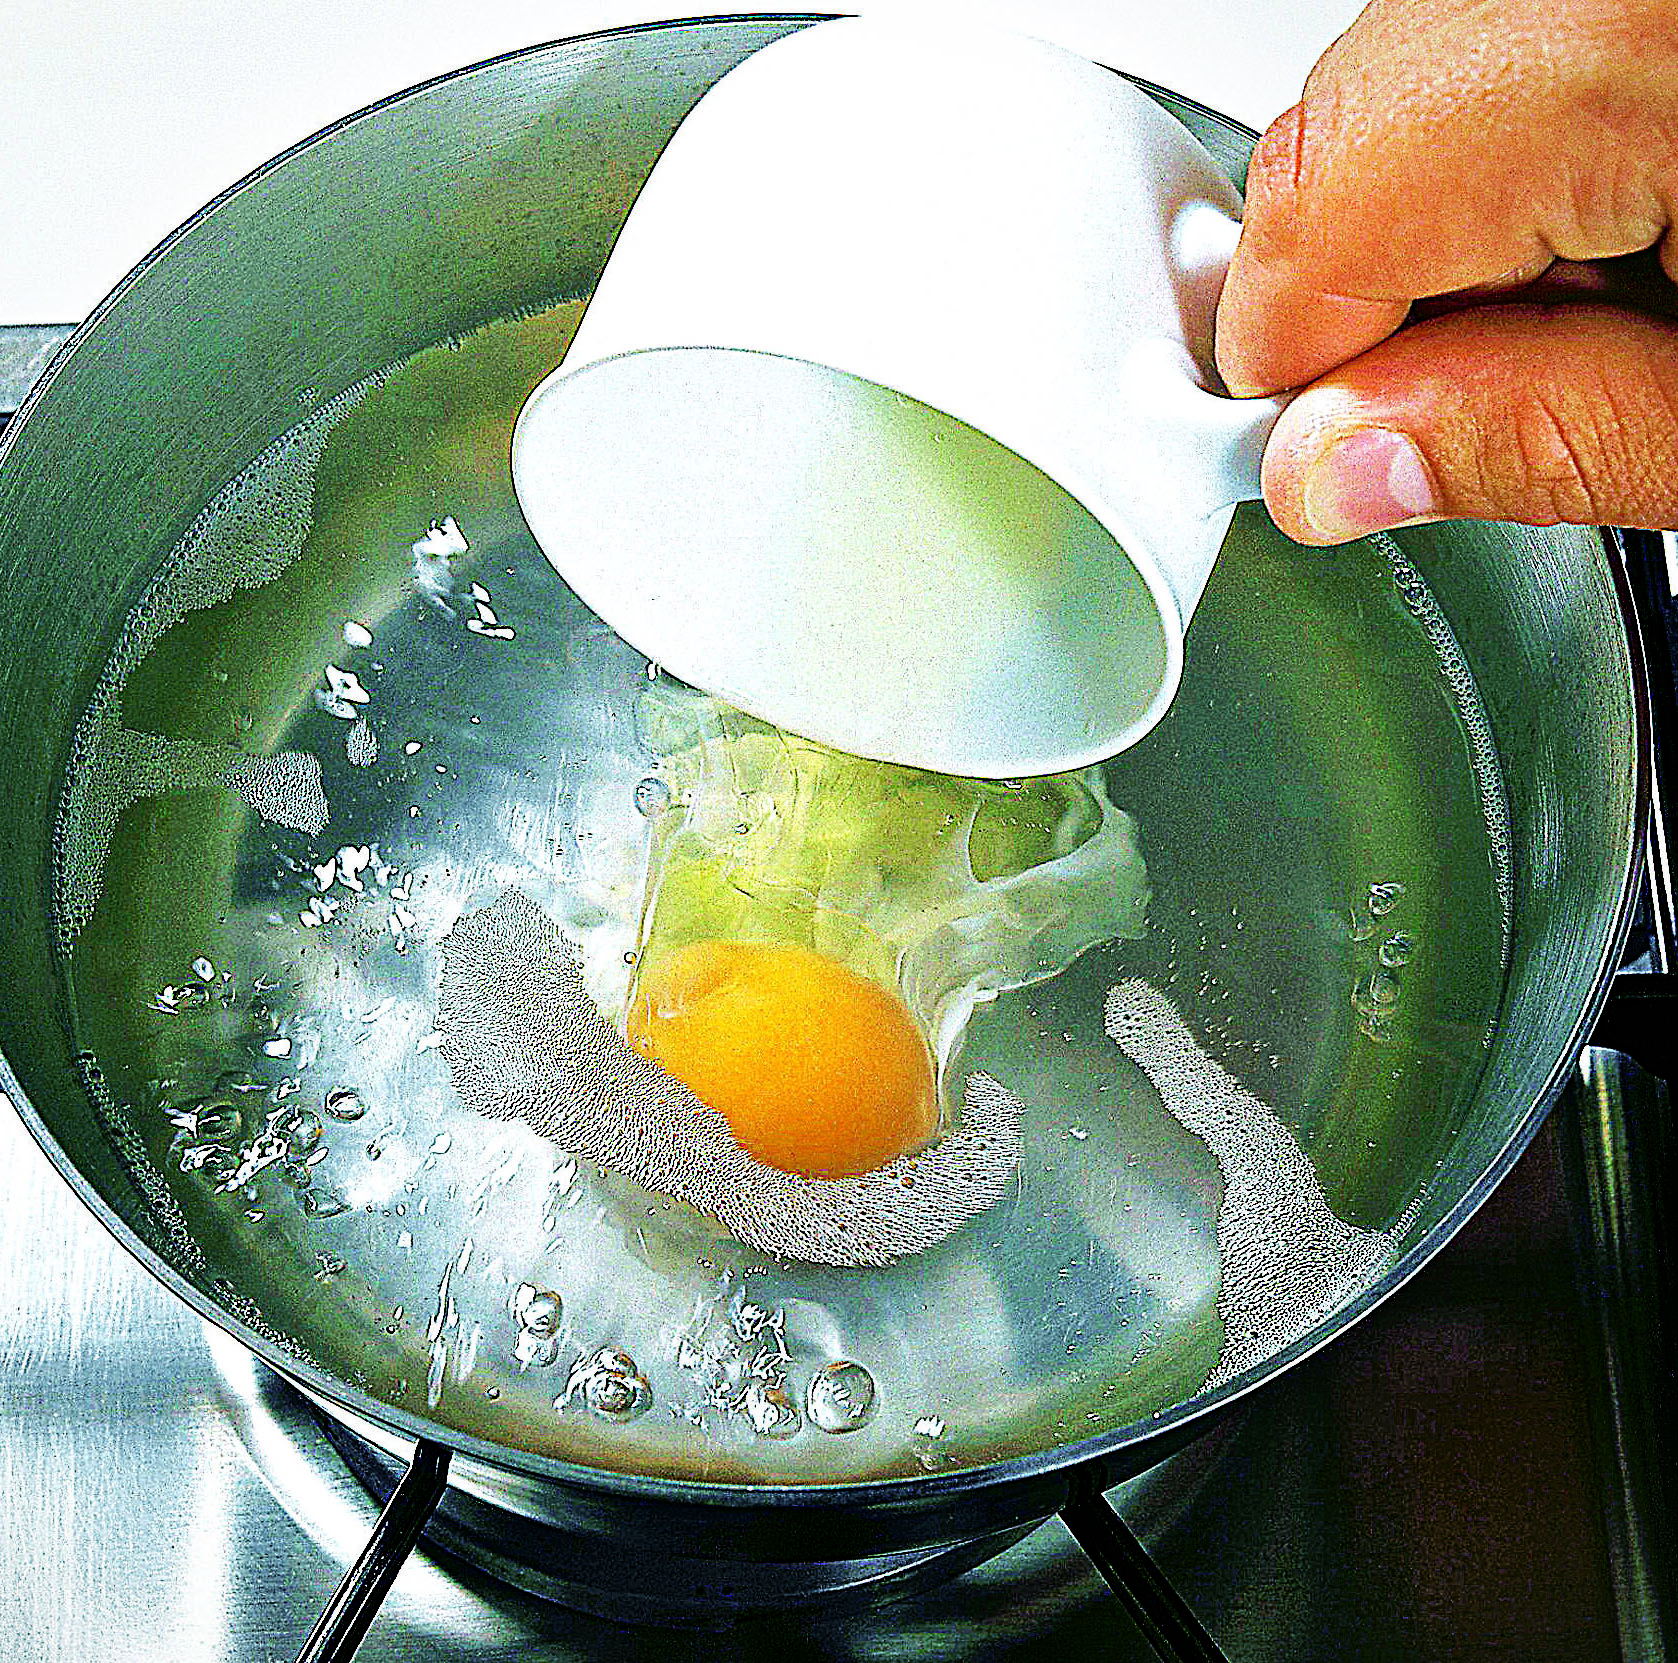 Пашот яйца рецепт в кастрюле. Яйцо пашот в мешочке. Варка яиц пашот. Яйцо пашот в кипящую воду. Яйцо пашот в кастрюле.